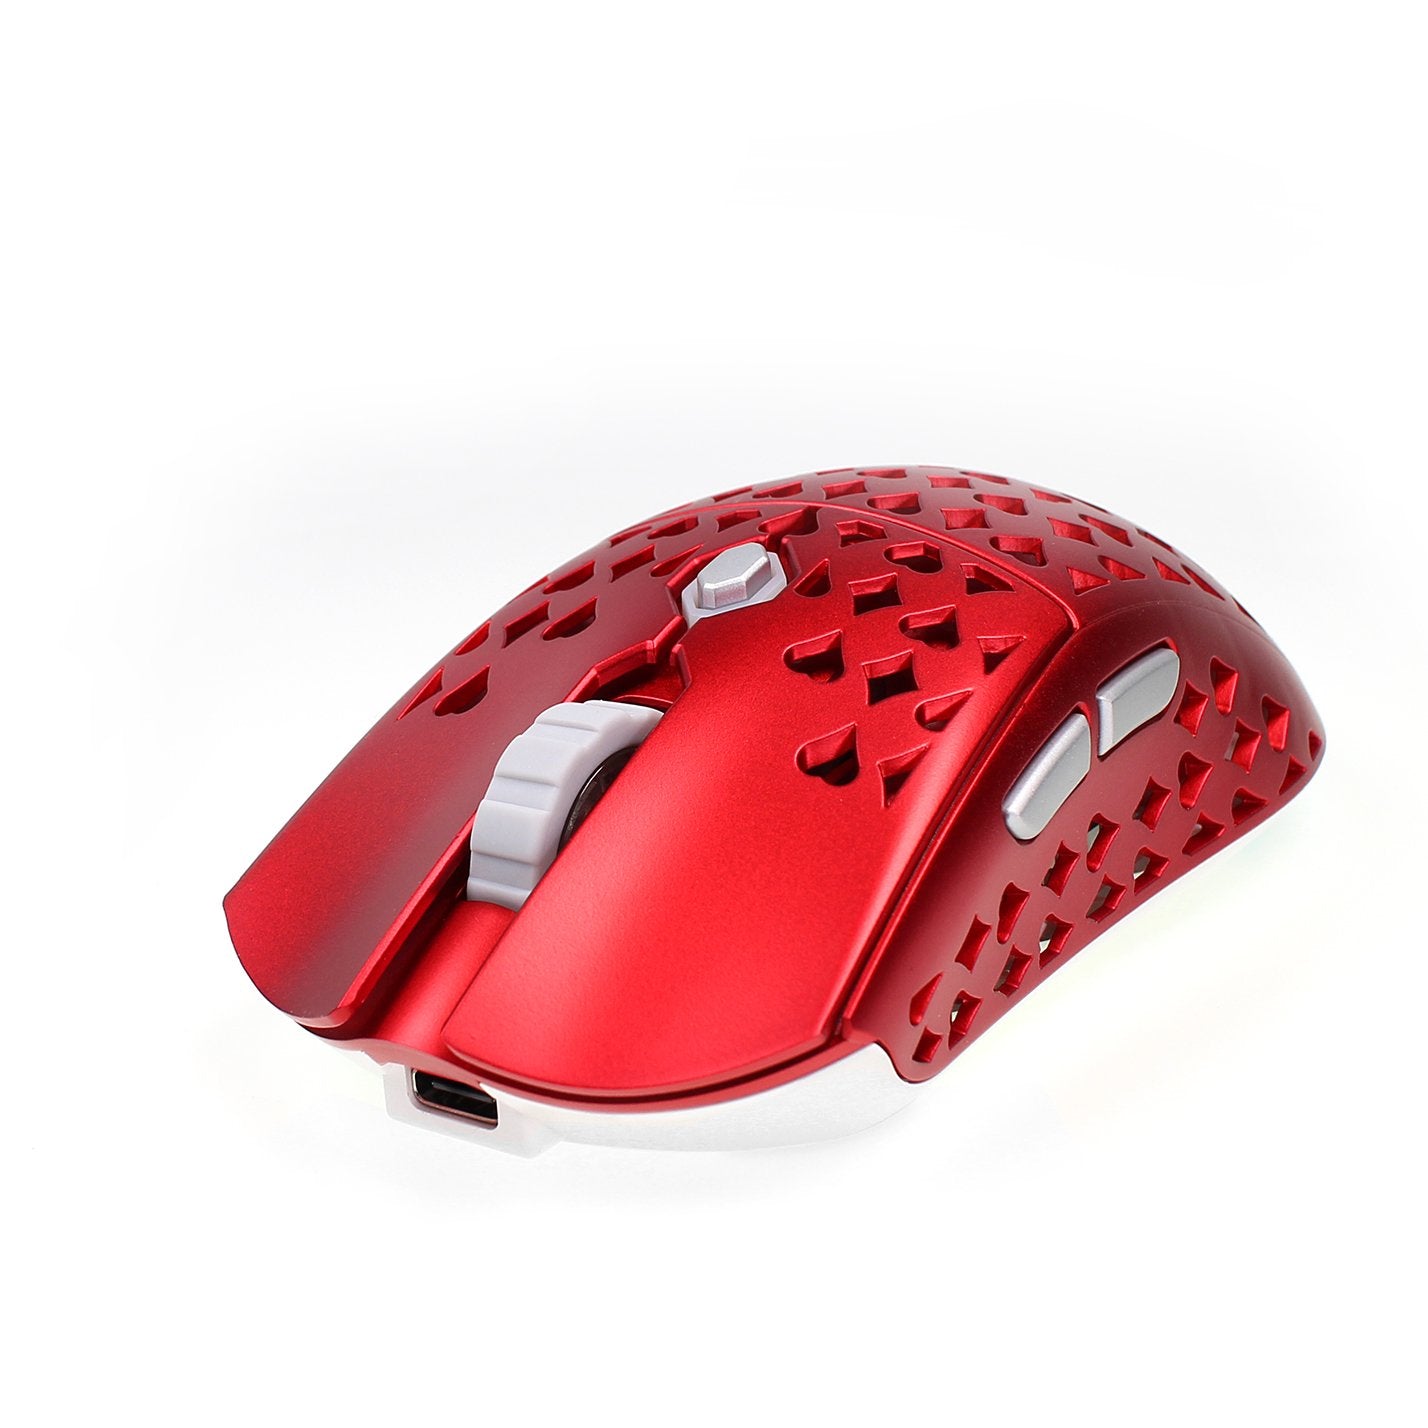 I virkeligheden samvittighed Museum Vancer Wireless Gretxa Red V2 Gaming Mouse :Addice Inc – Addice Inc